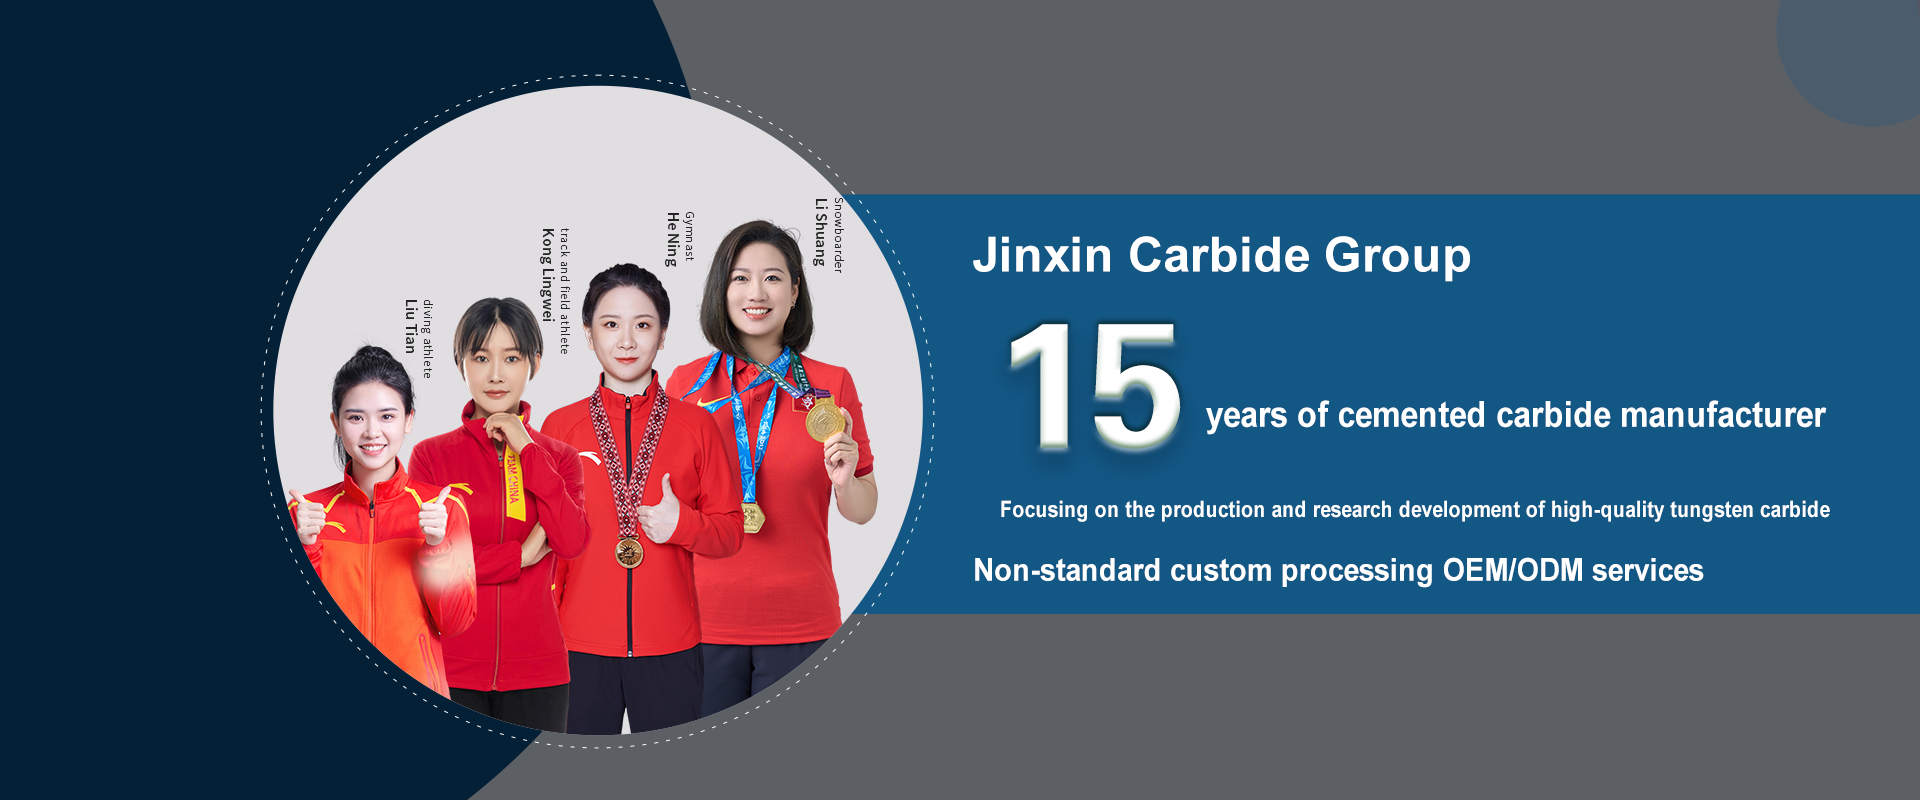 jinxin carbide group